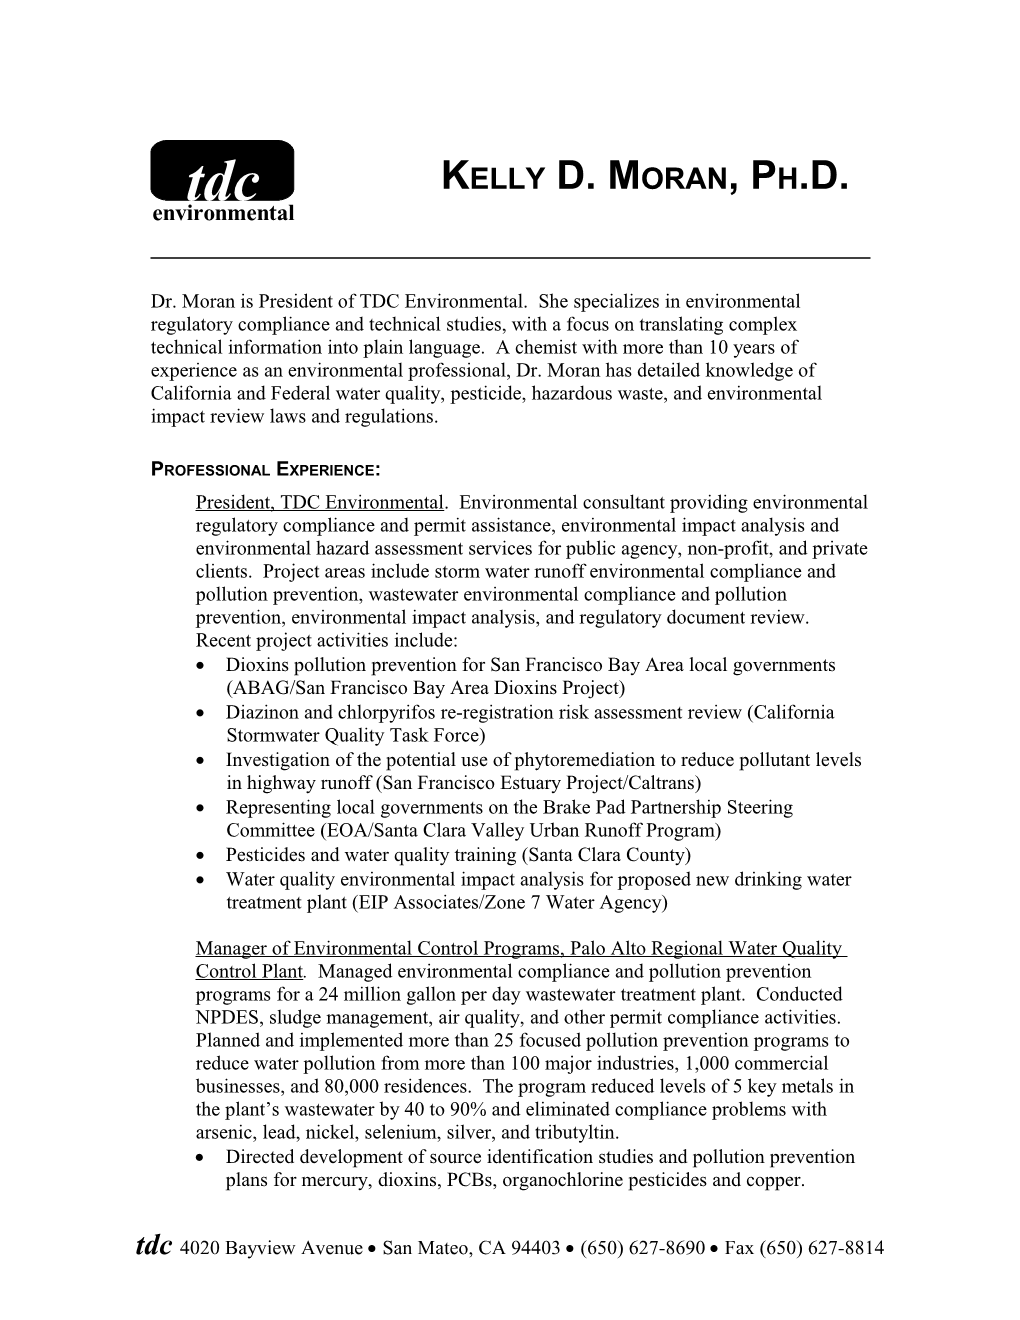 Kelly D. Moran, Ph.D